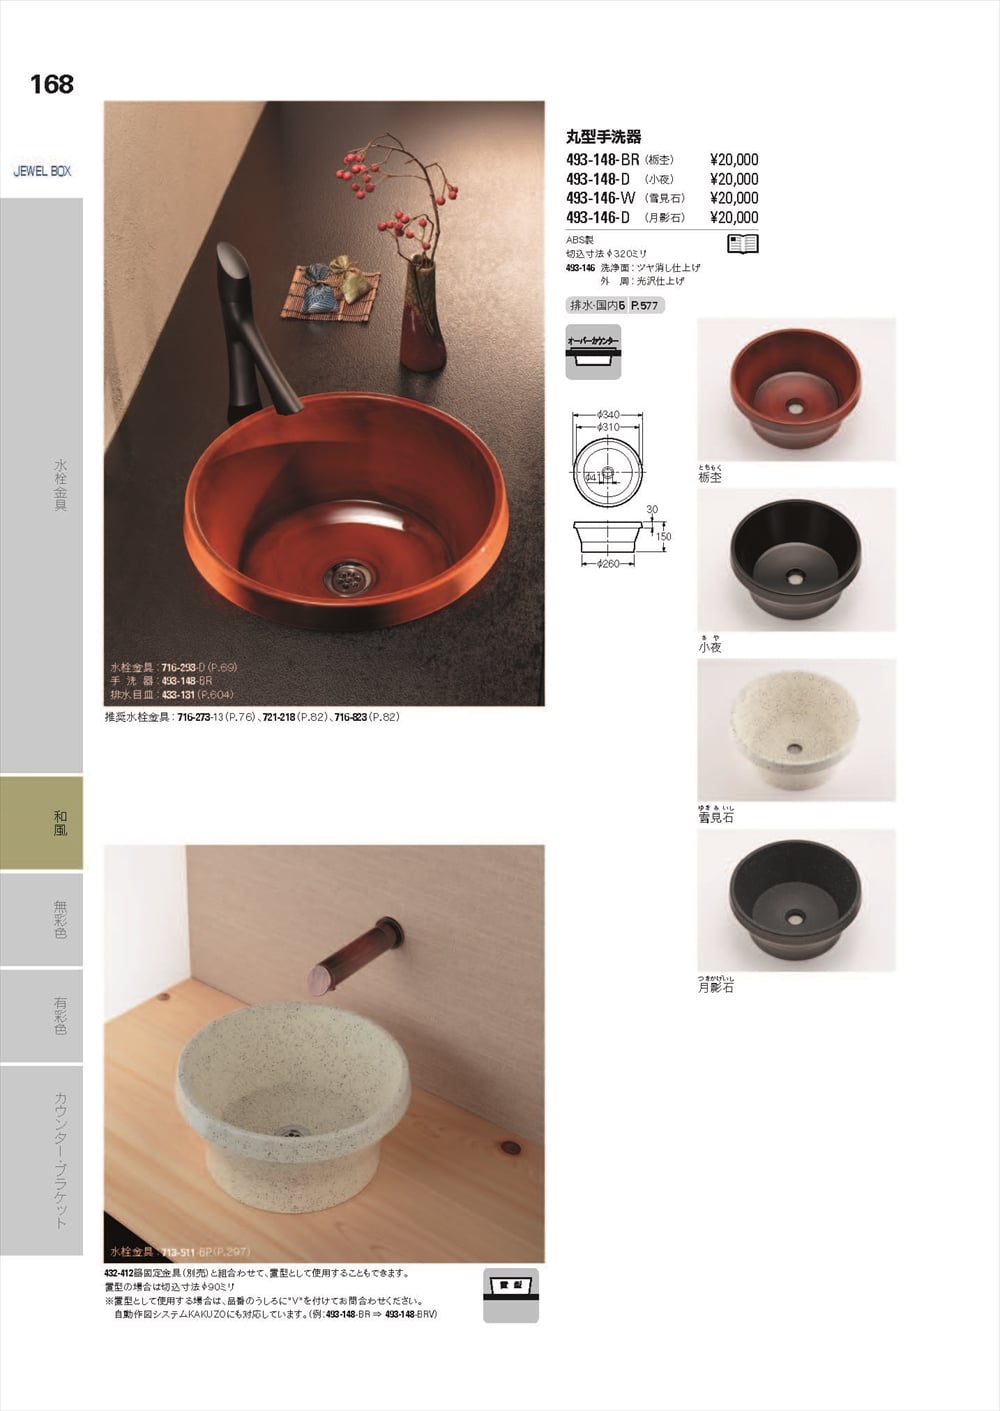 カクダイ 丸型手洗器  アーモンド 493-144-LD - 1